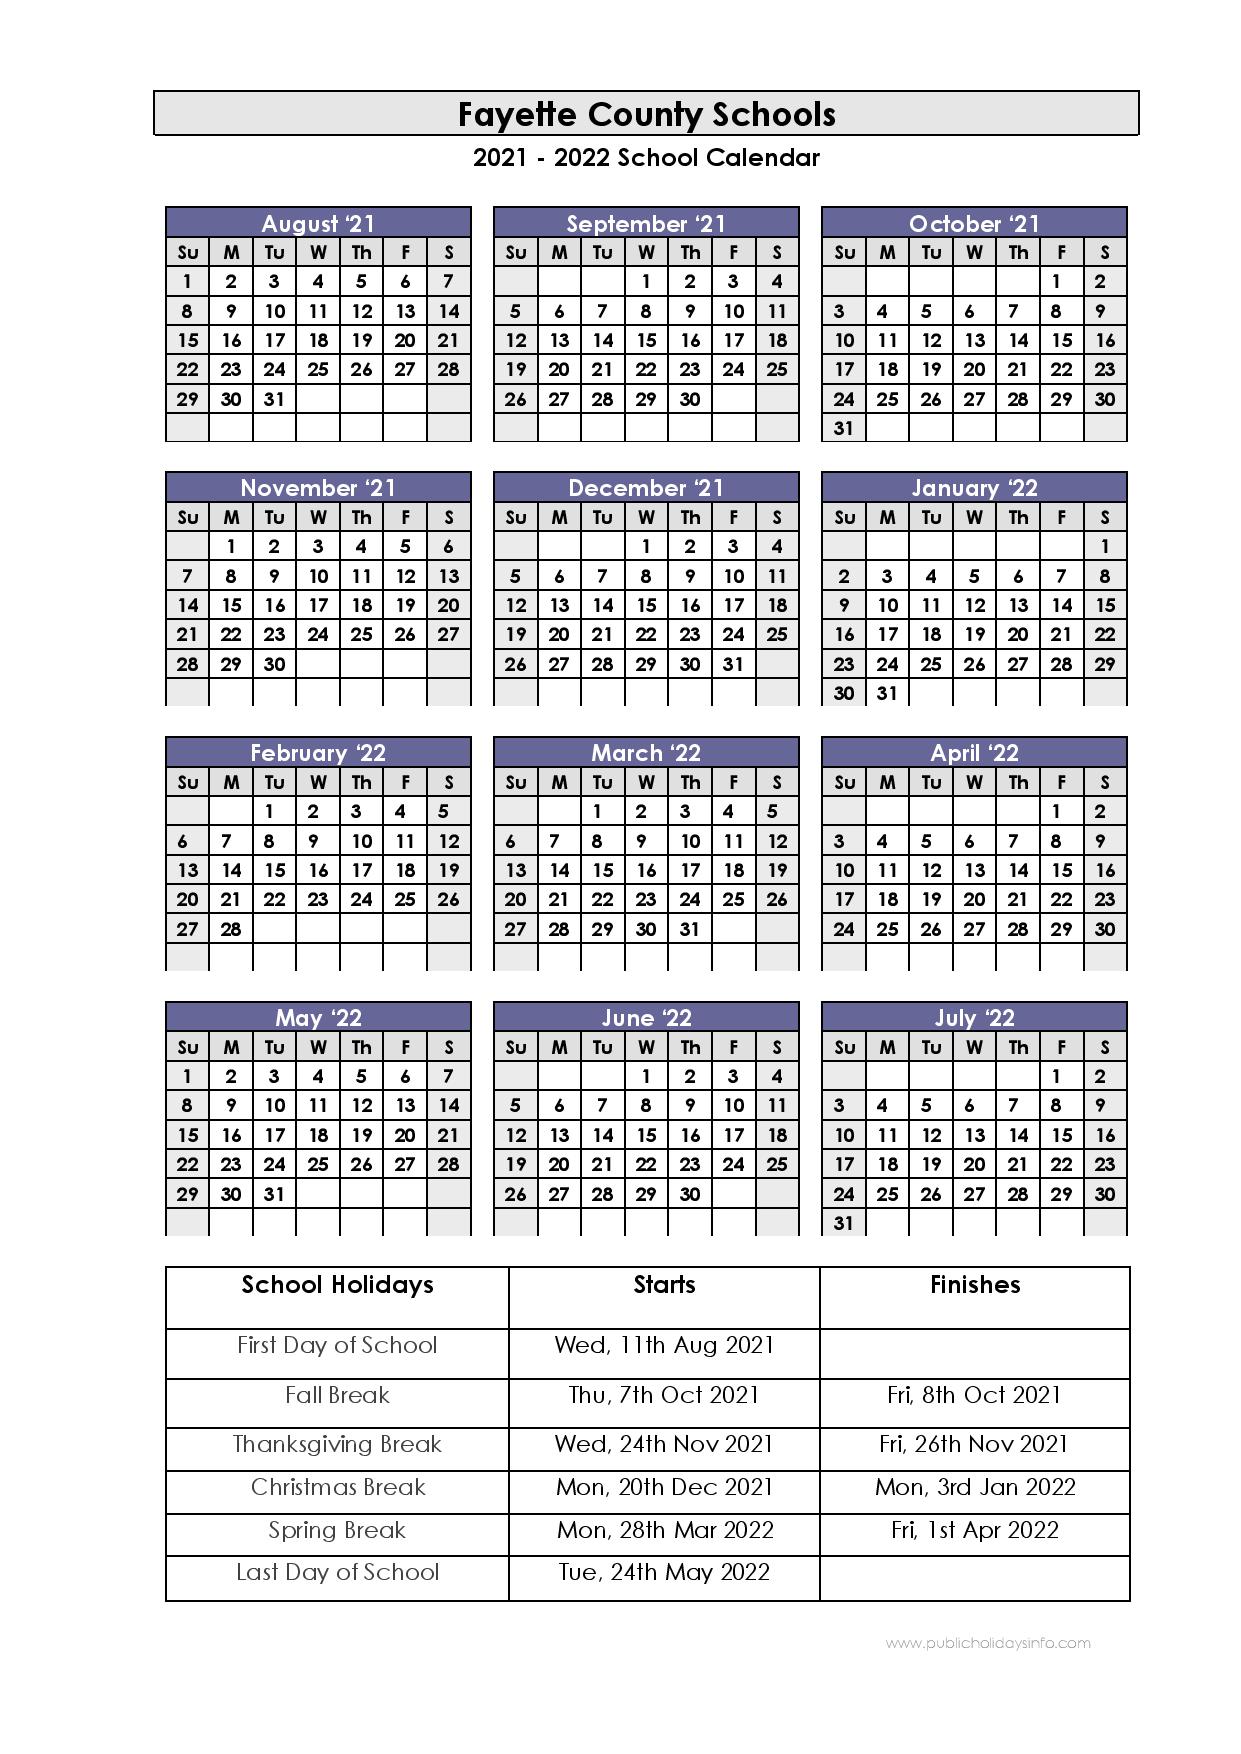 Fcps Calendar 2022 Fayette County Schools Calendar 2021-2022 (Kentucky)